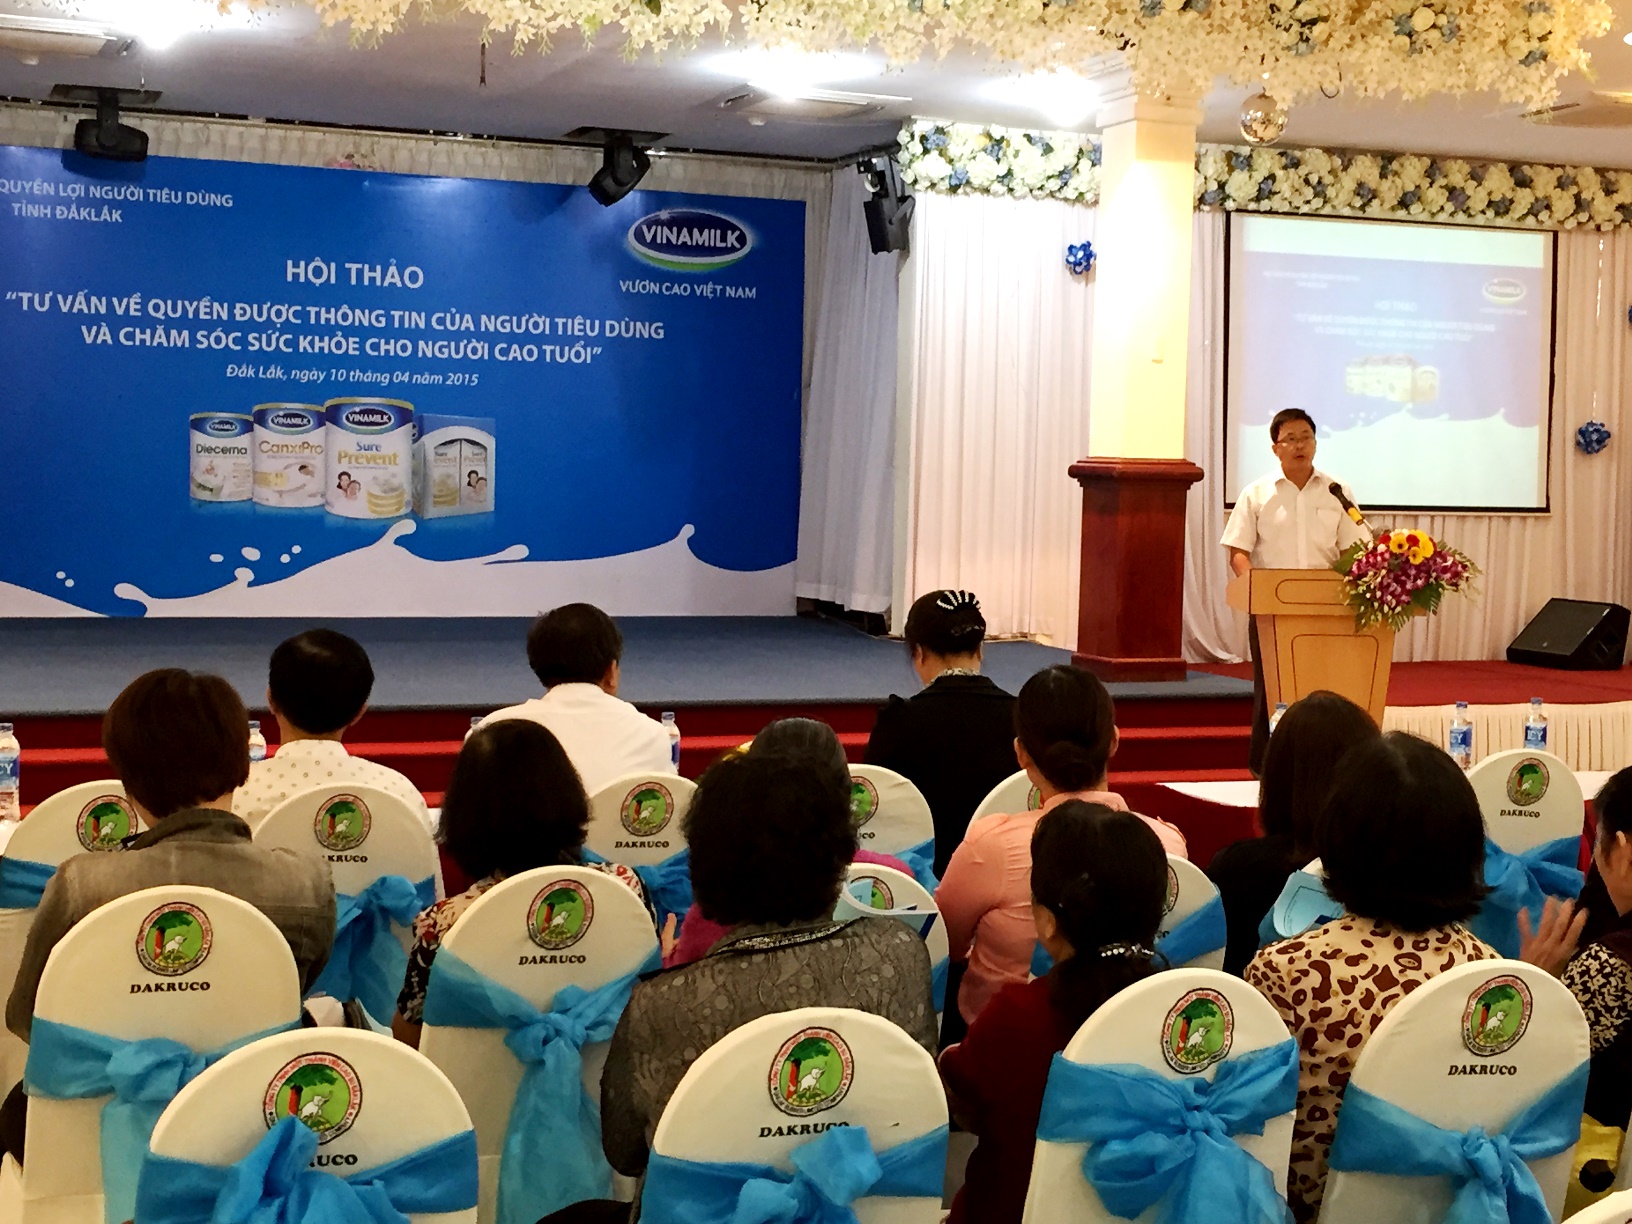 Ông Nguyễn Ngọc Thành – Giám đốc kinh doanh miền Trung, Vinamilk chia sẻ với người tiêu dùng những thông tin về công ty